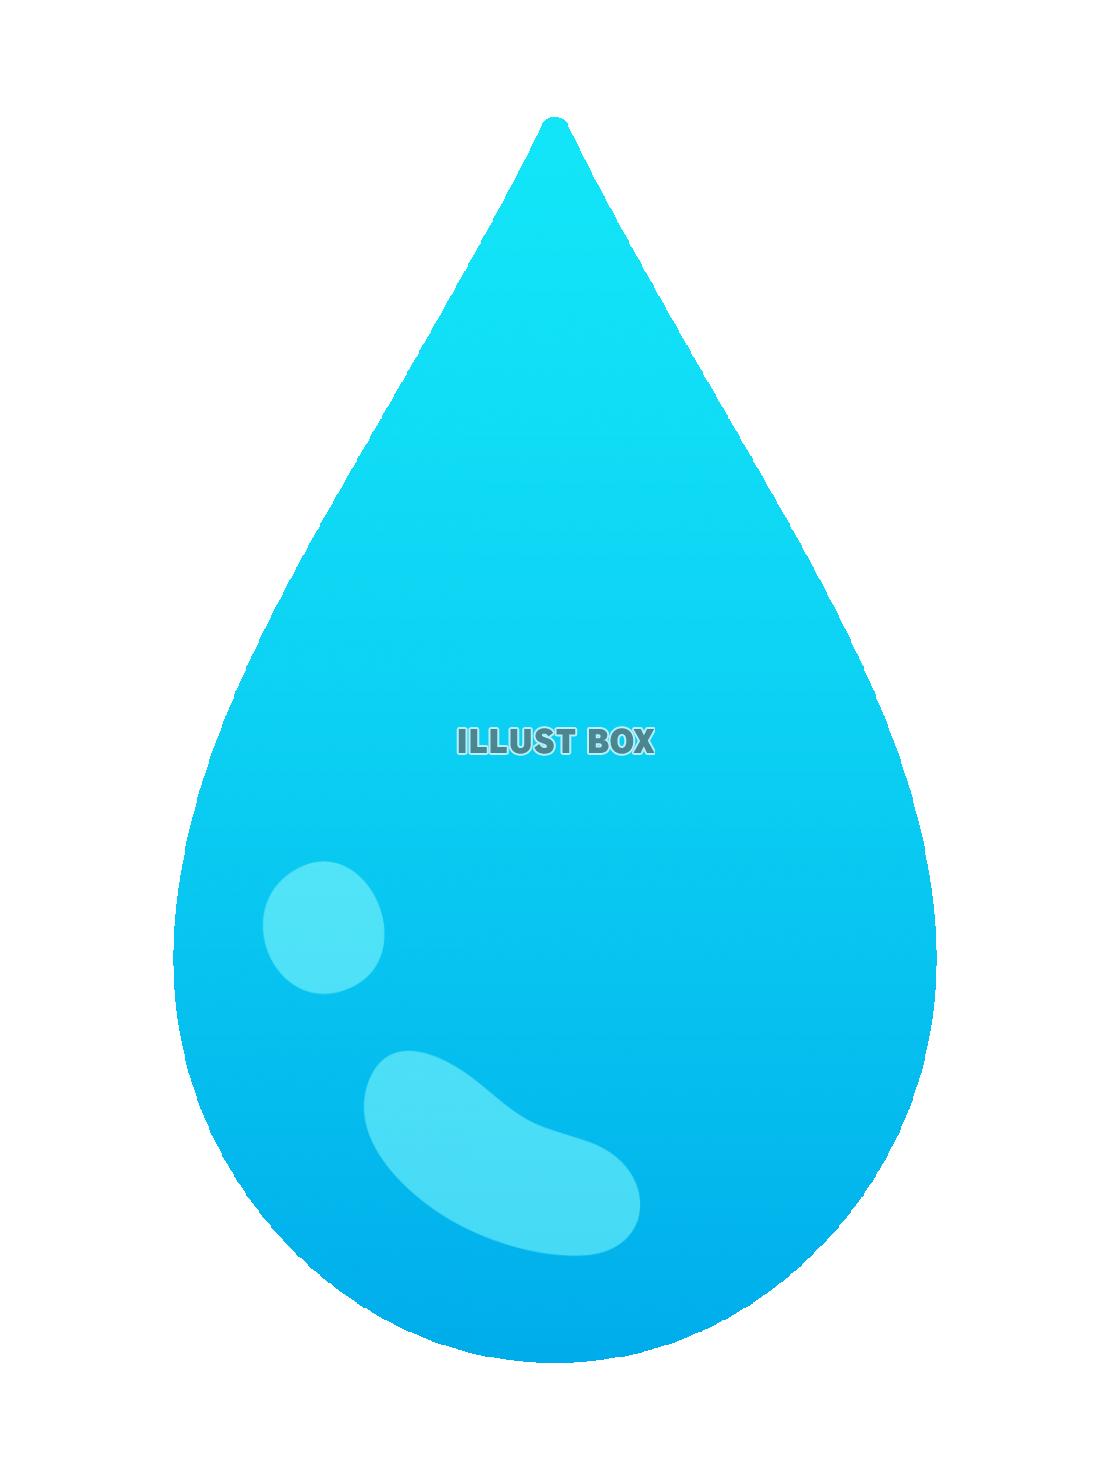 水滴のイラスト